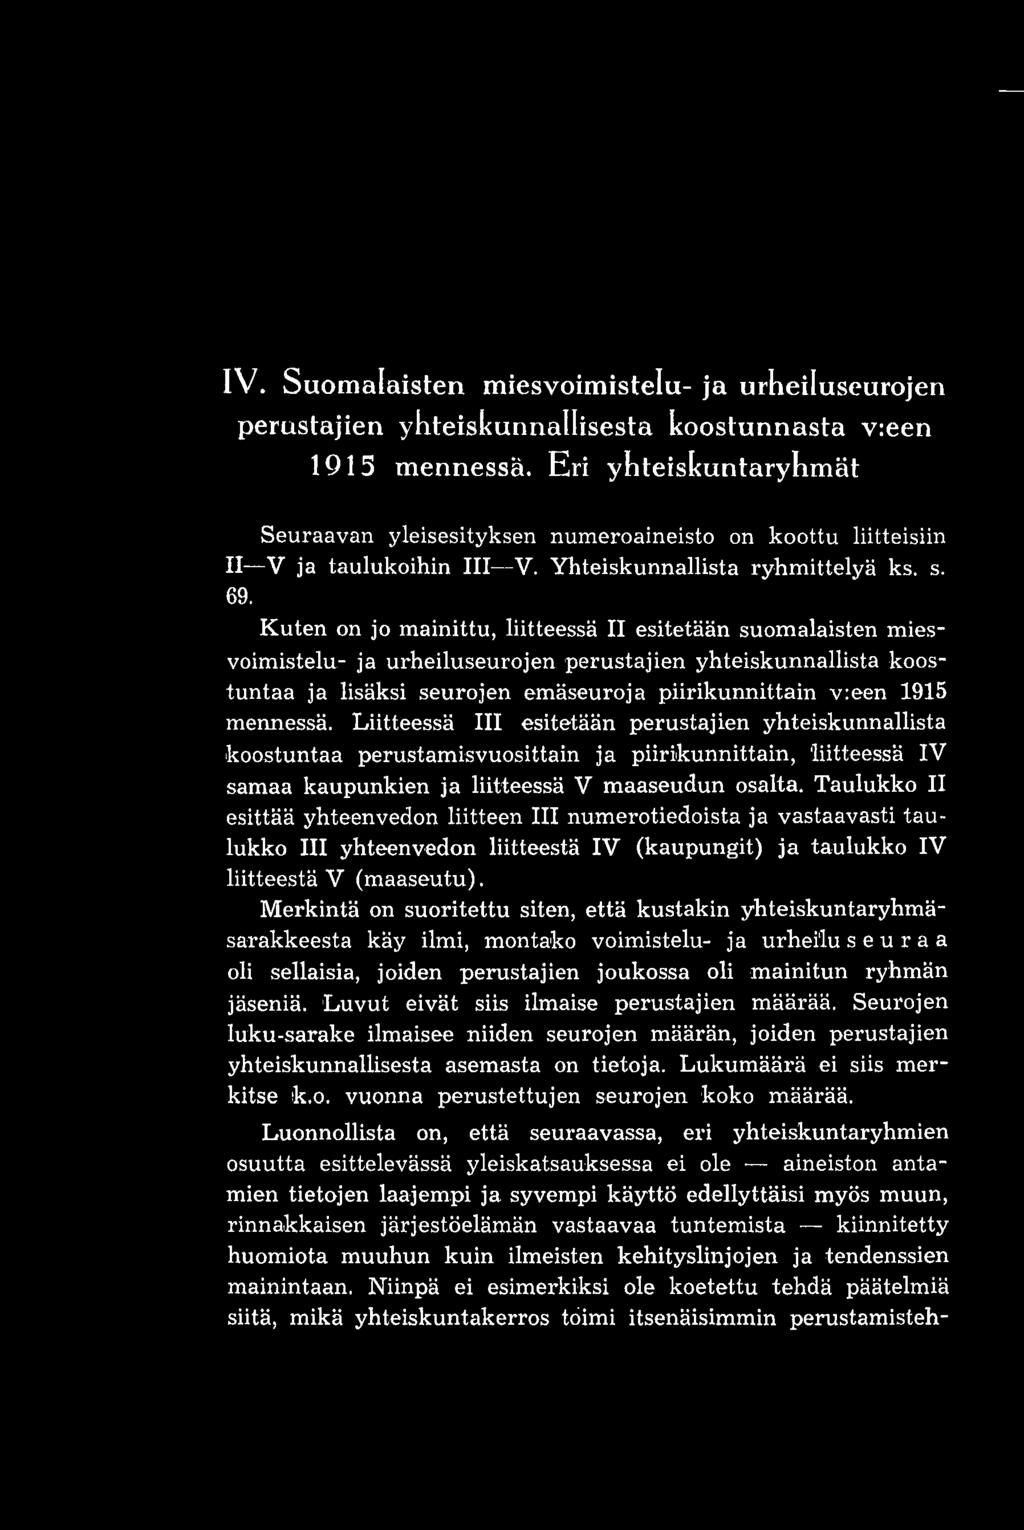 Kuten on jo mainittu, liitteessä II esitetään suomalaisten miesvoimistelu- ja urheiluseurojen perustajien yhteiskunnallista koostuntaa ja lisäksi seurojen emäseuroja piirikunnittain v:een 1915